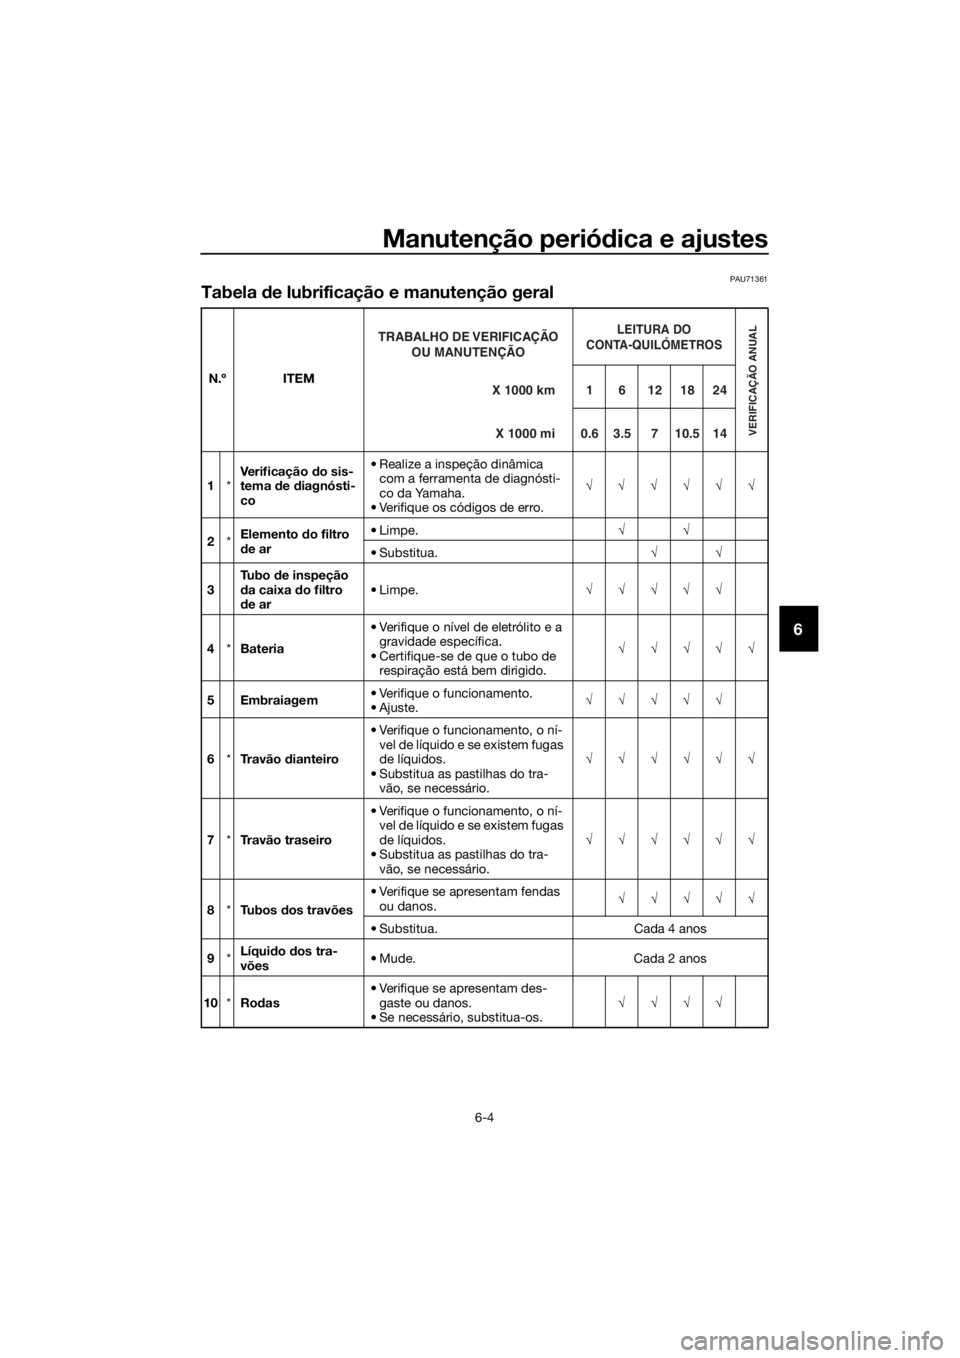 YAMAHA YZF-R125 2017  Manual de utilização (in Portuguese) Manutenção periódica e ajustes
6-4
6
PAU71361
Tabela de lubrificação e manutenção geral
N.º ITEM
1*Verificação do sis-
tema de diagnósti-
co• Realize a inspeção dinâmica 
com a ferrame